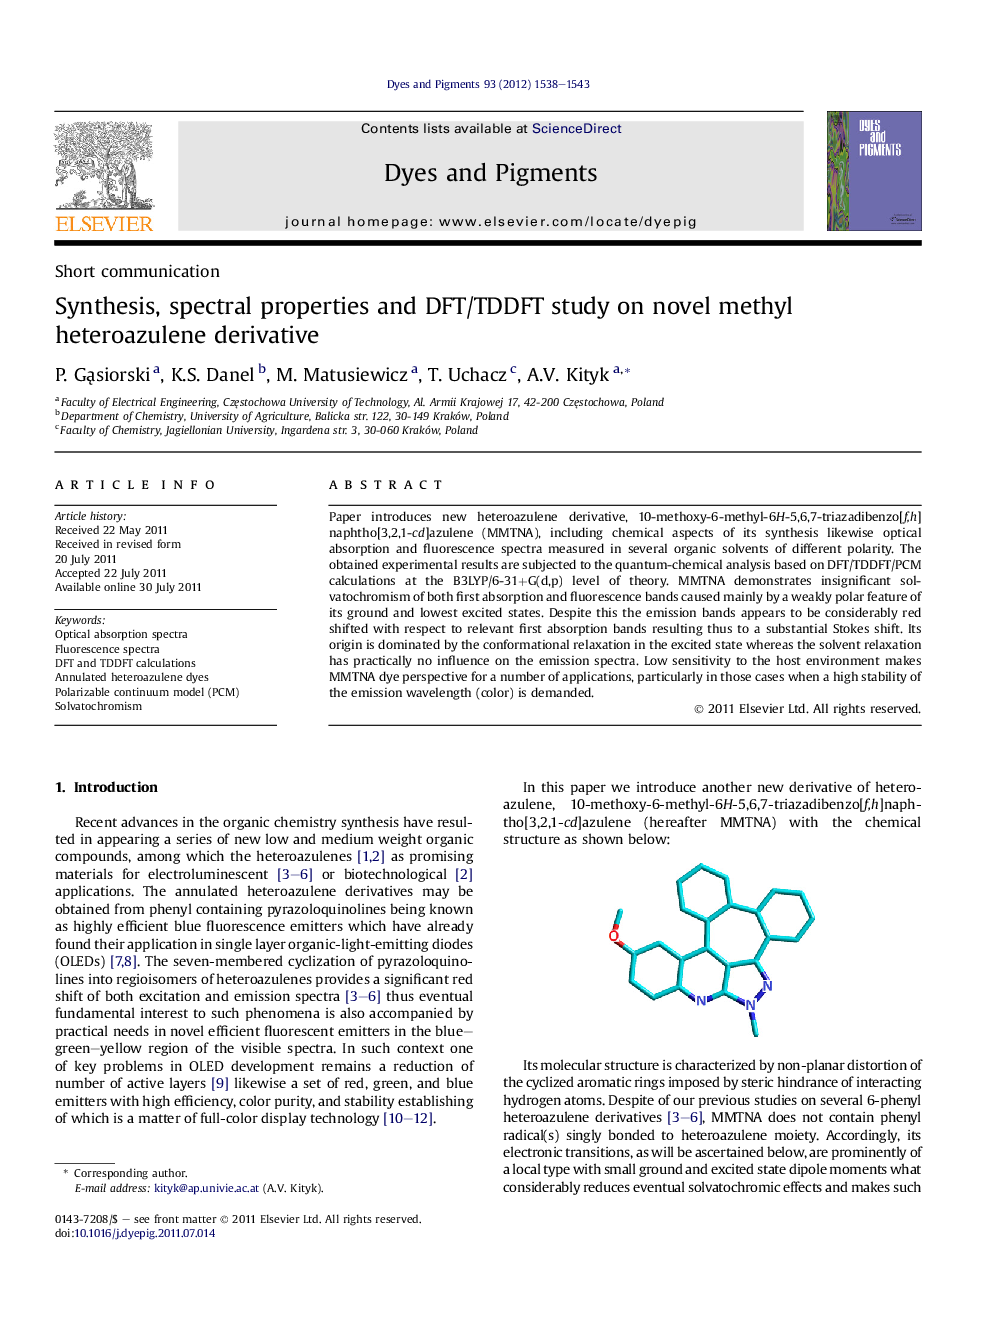 Synthesis, spectral properties and DFT/TDDFT study on novel methyl heteroazulene derivative